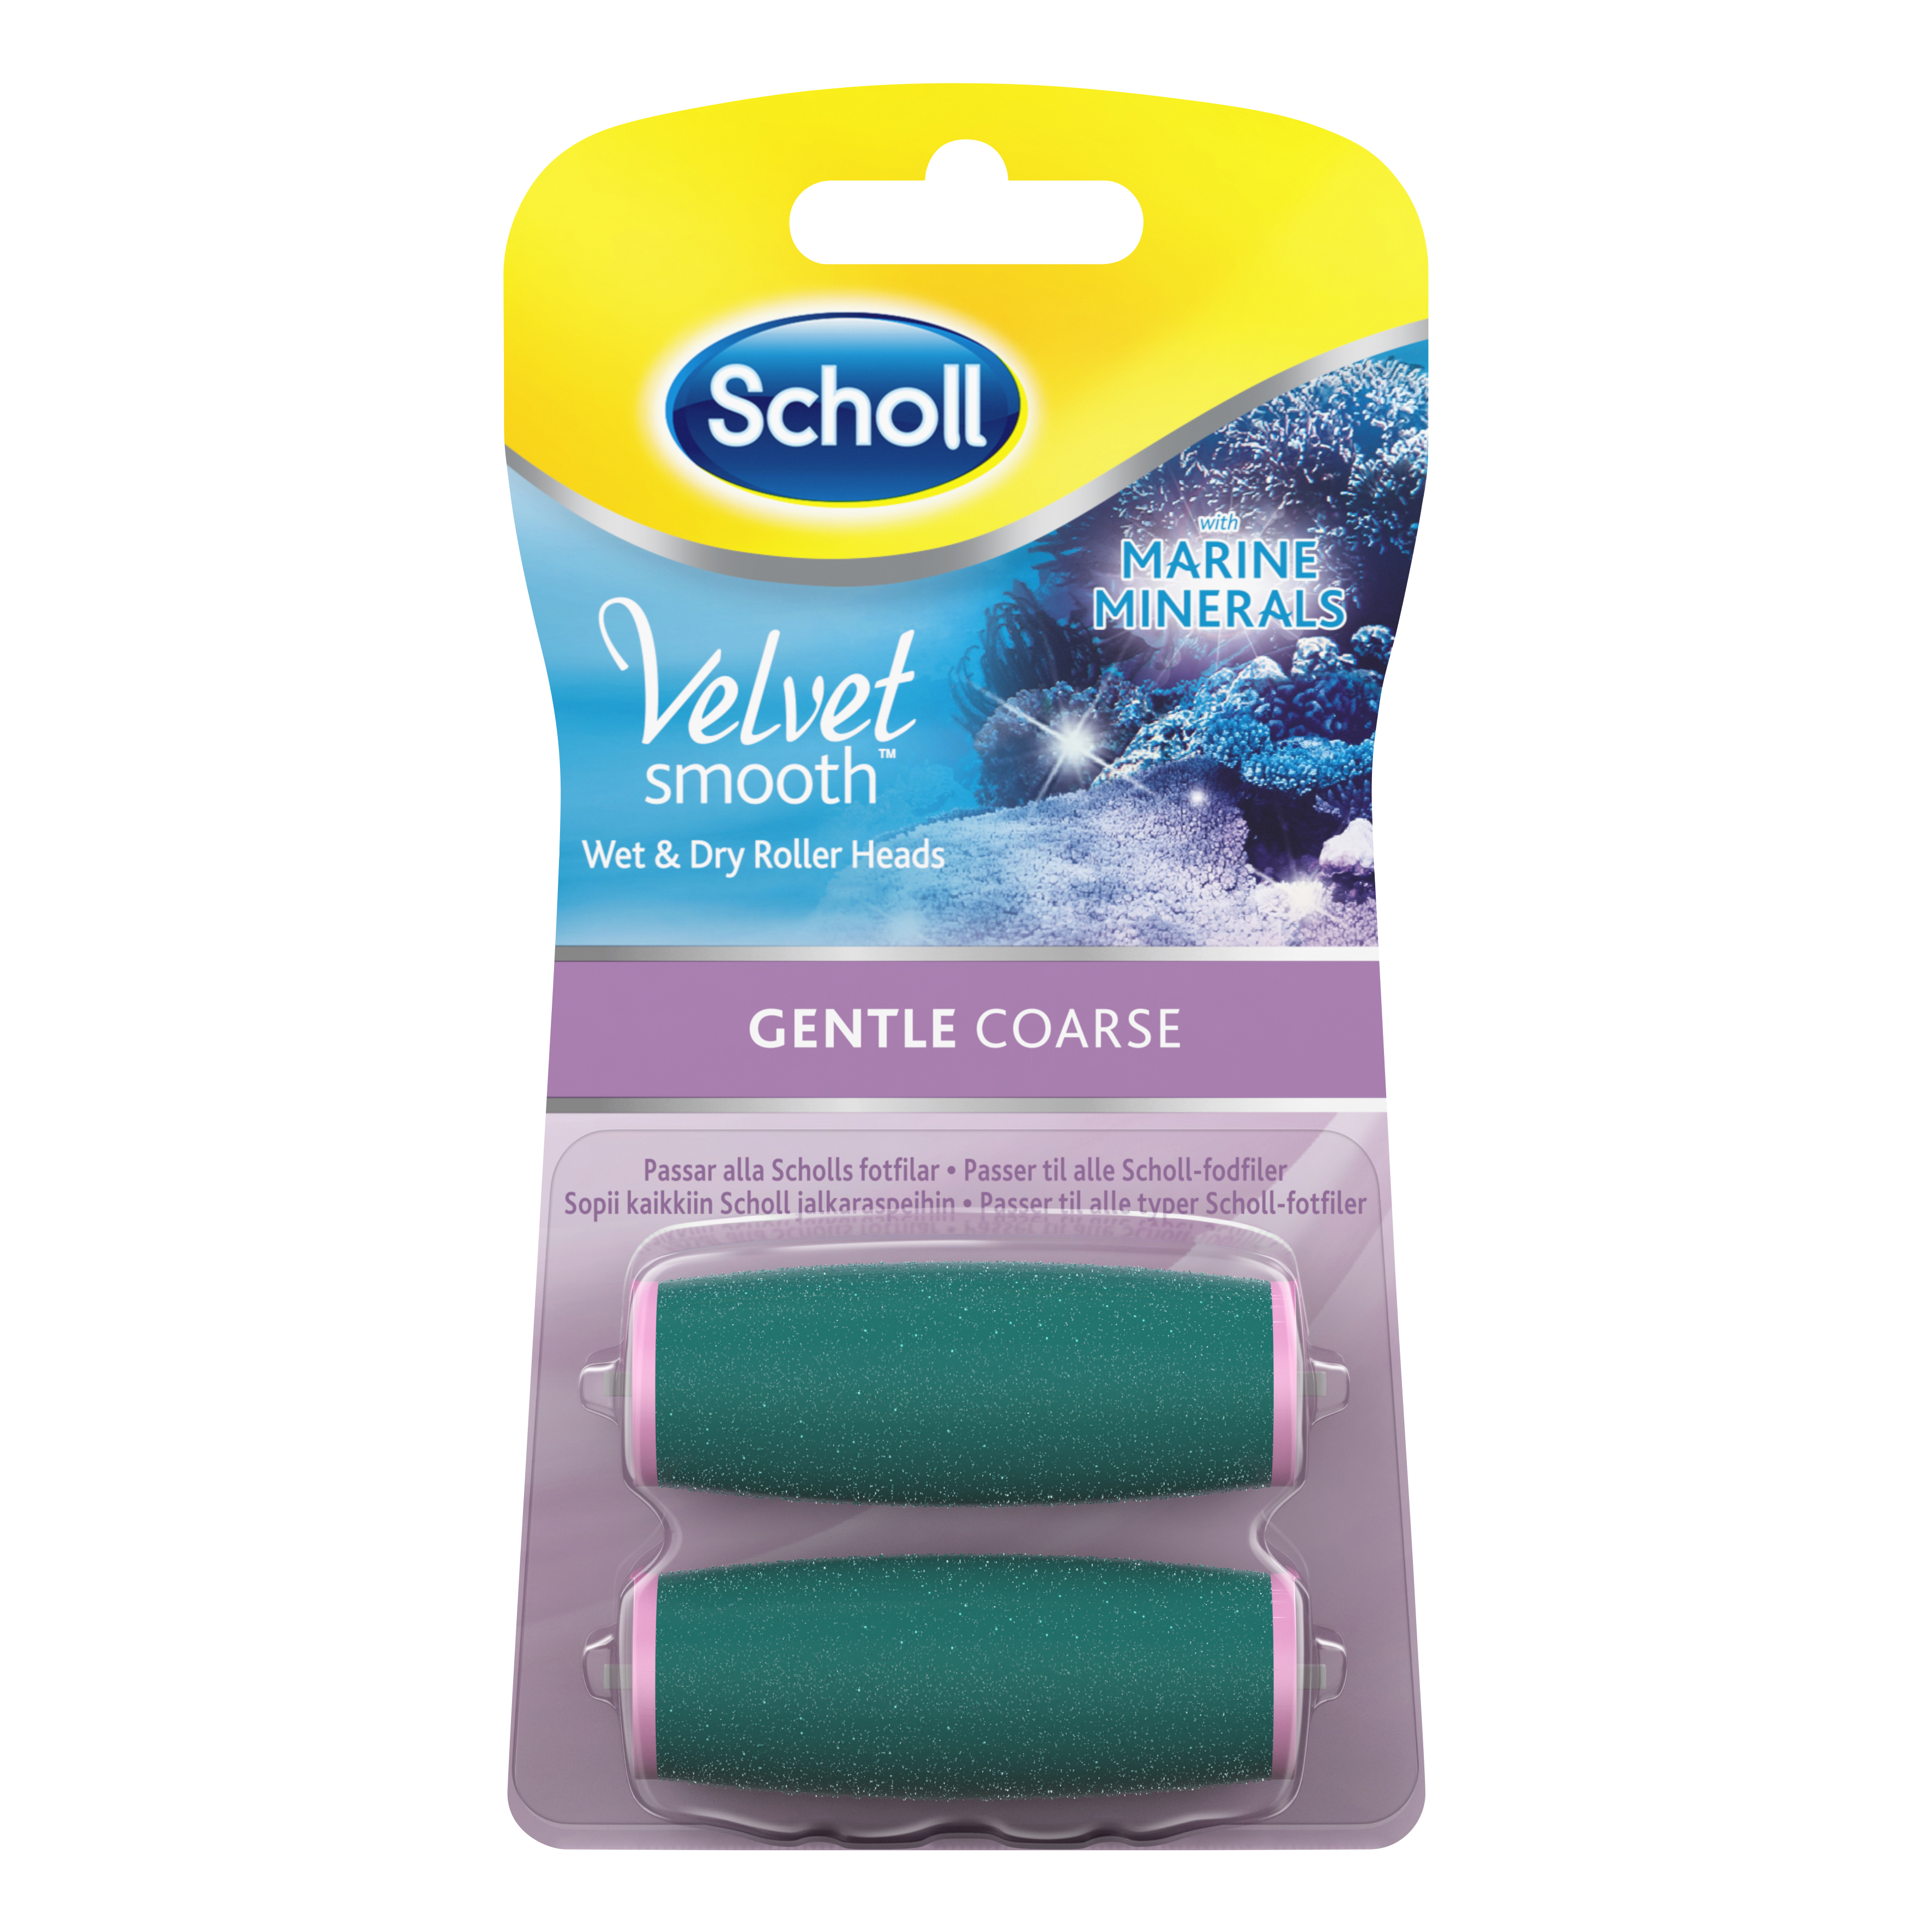 Scholl Velvet Gentle Coarse Refill, 2 stk.